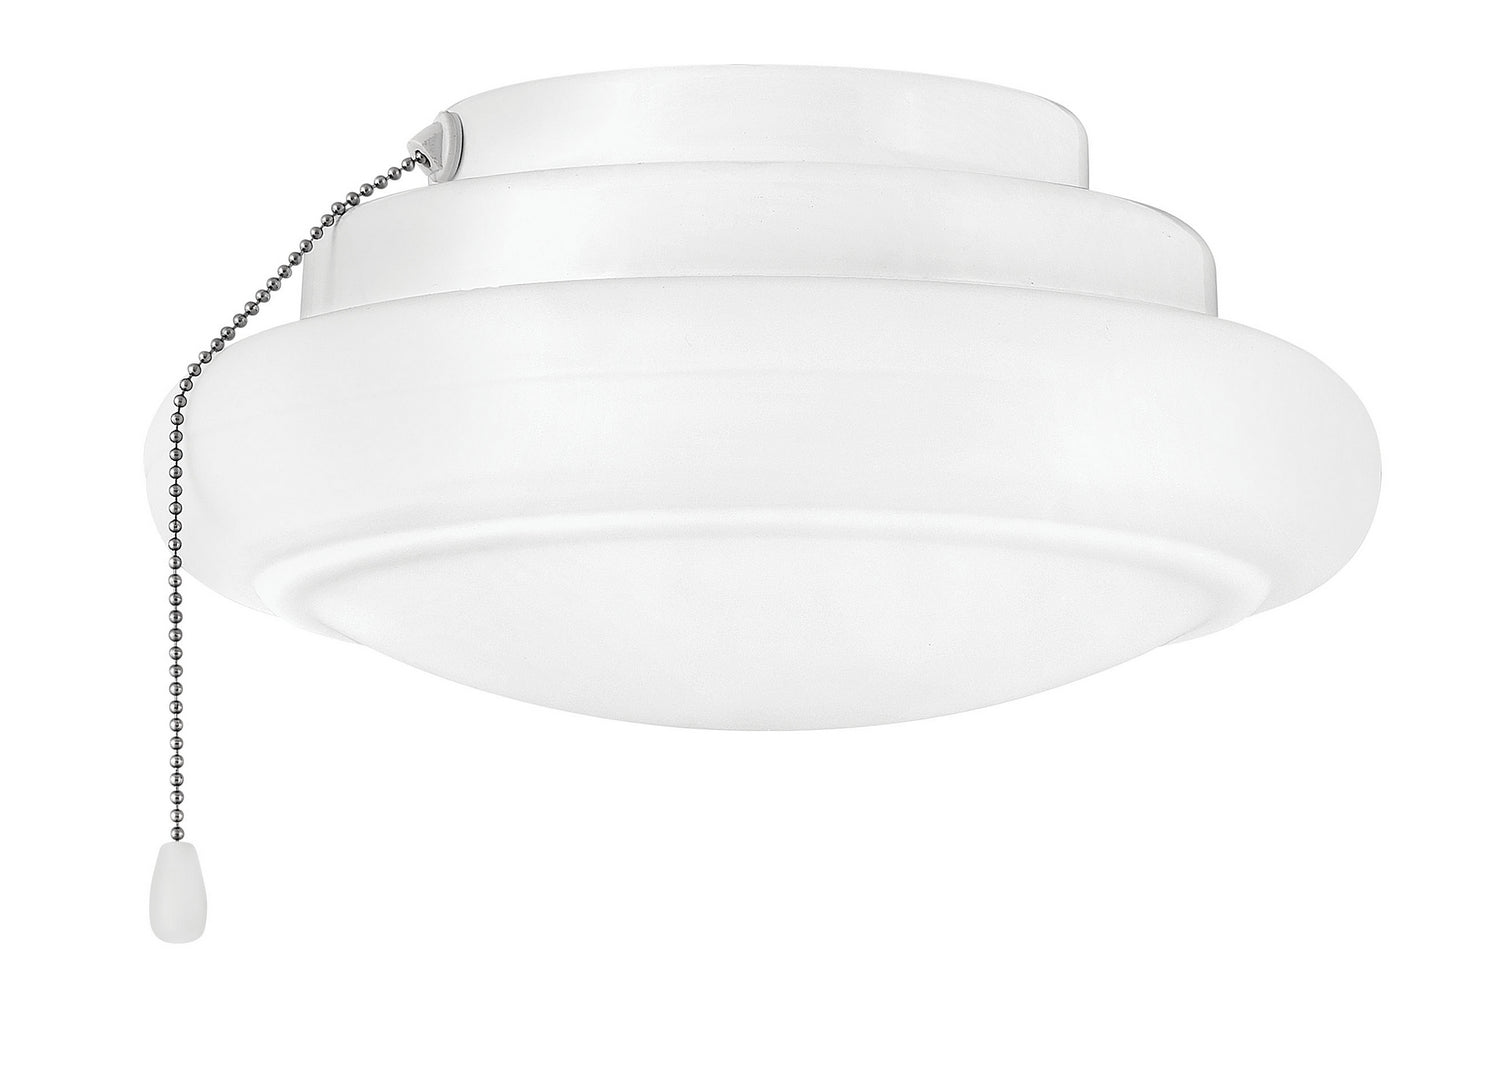 Hinkley - 930006FAW - LED Fan Light Kit - Light Kit - Appliance White